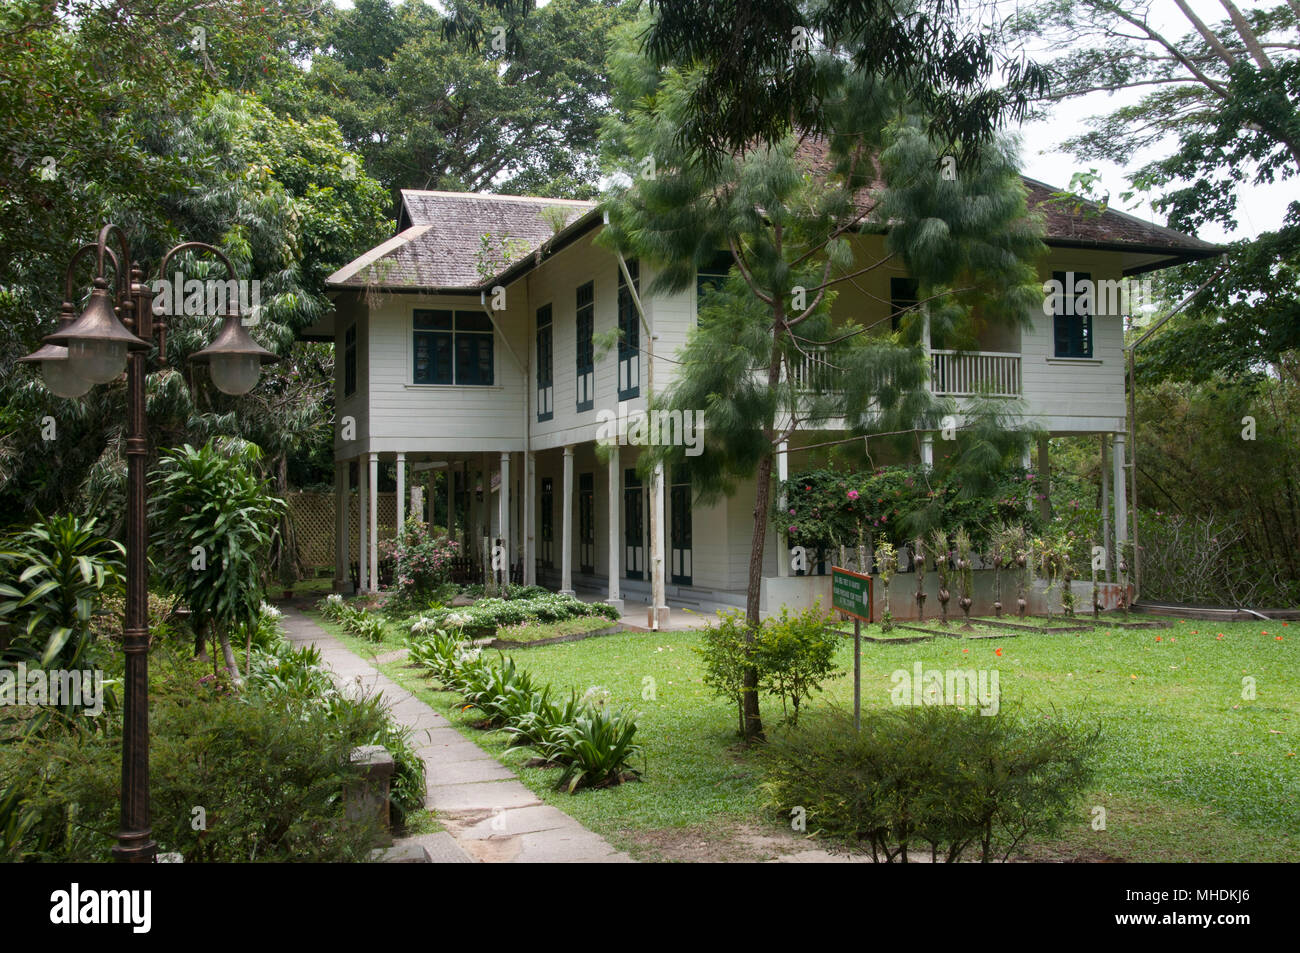 Die historische Agnes Keith Haus, Sandakan, Malaysia Borneo, Haus zum Thema "Land unter dem Wind' in den 1930er und 1940er Jahren Stockfoto